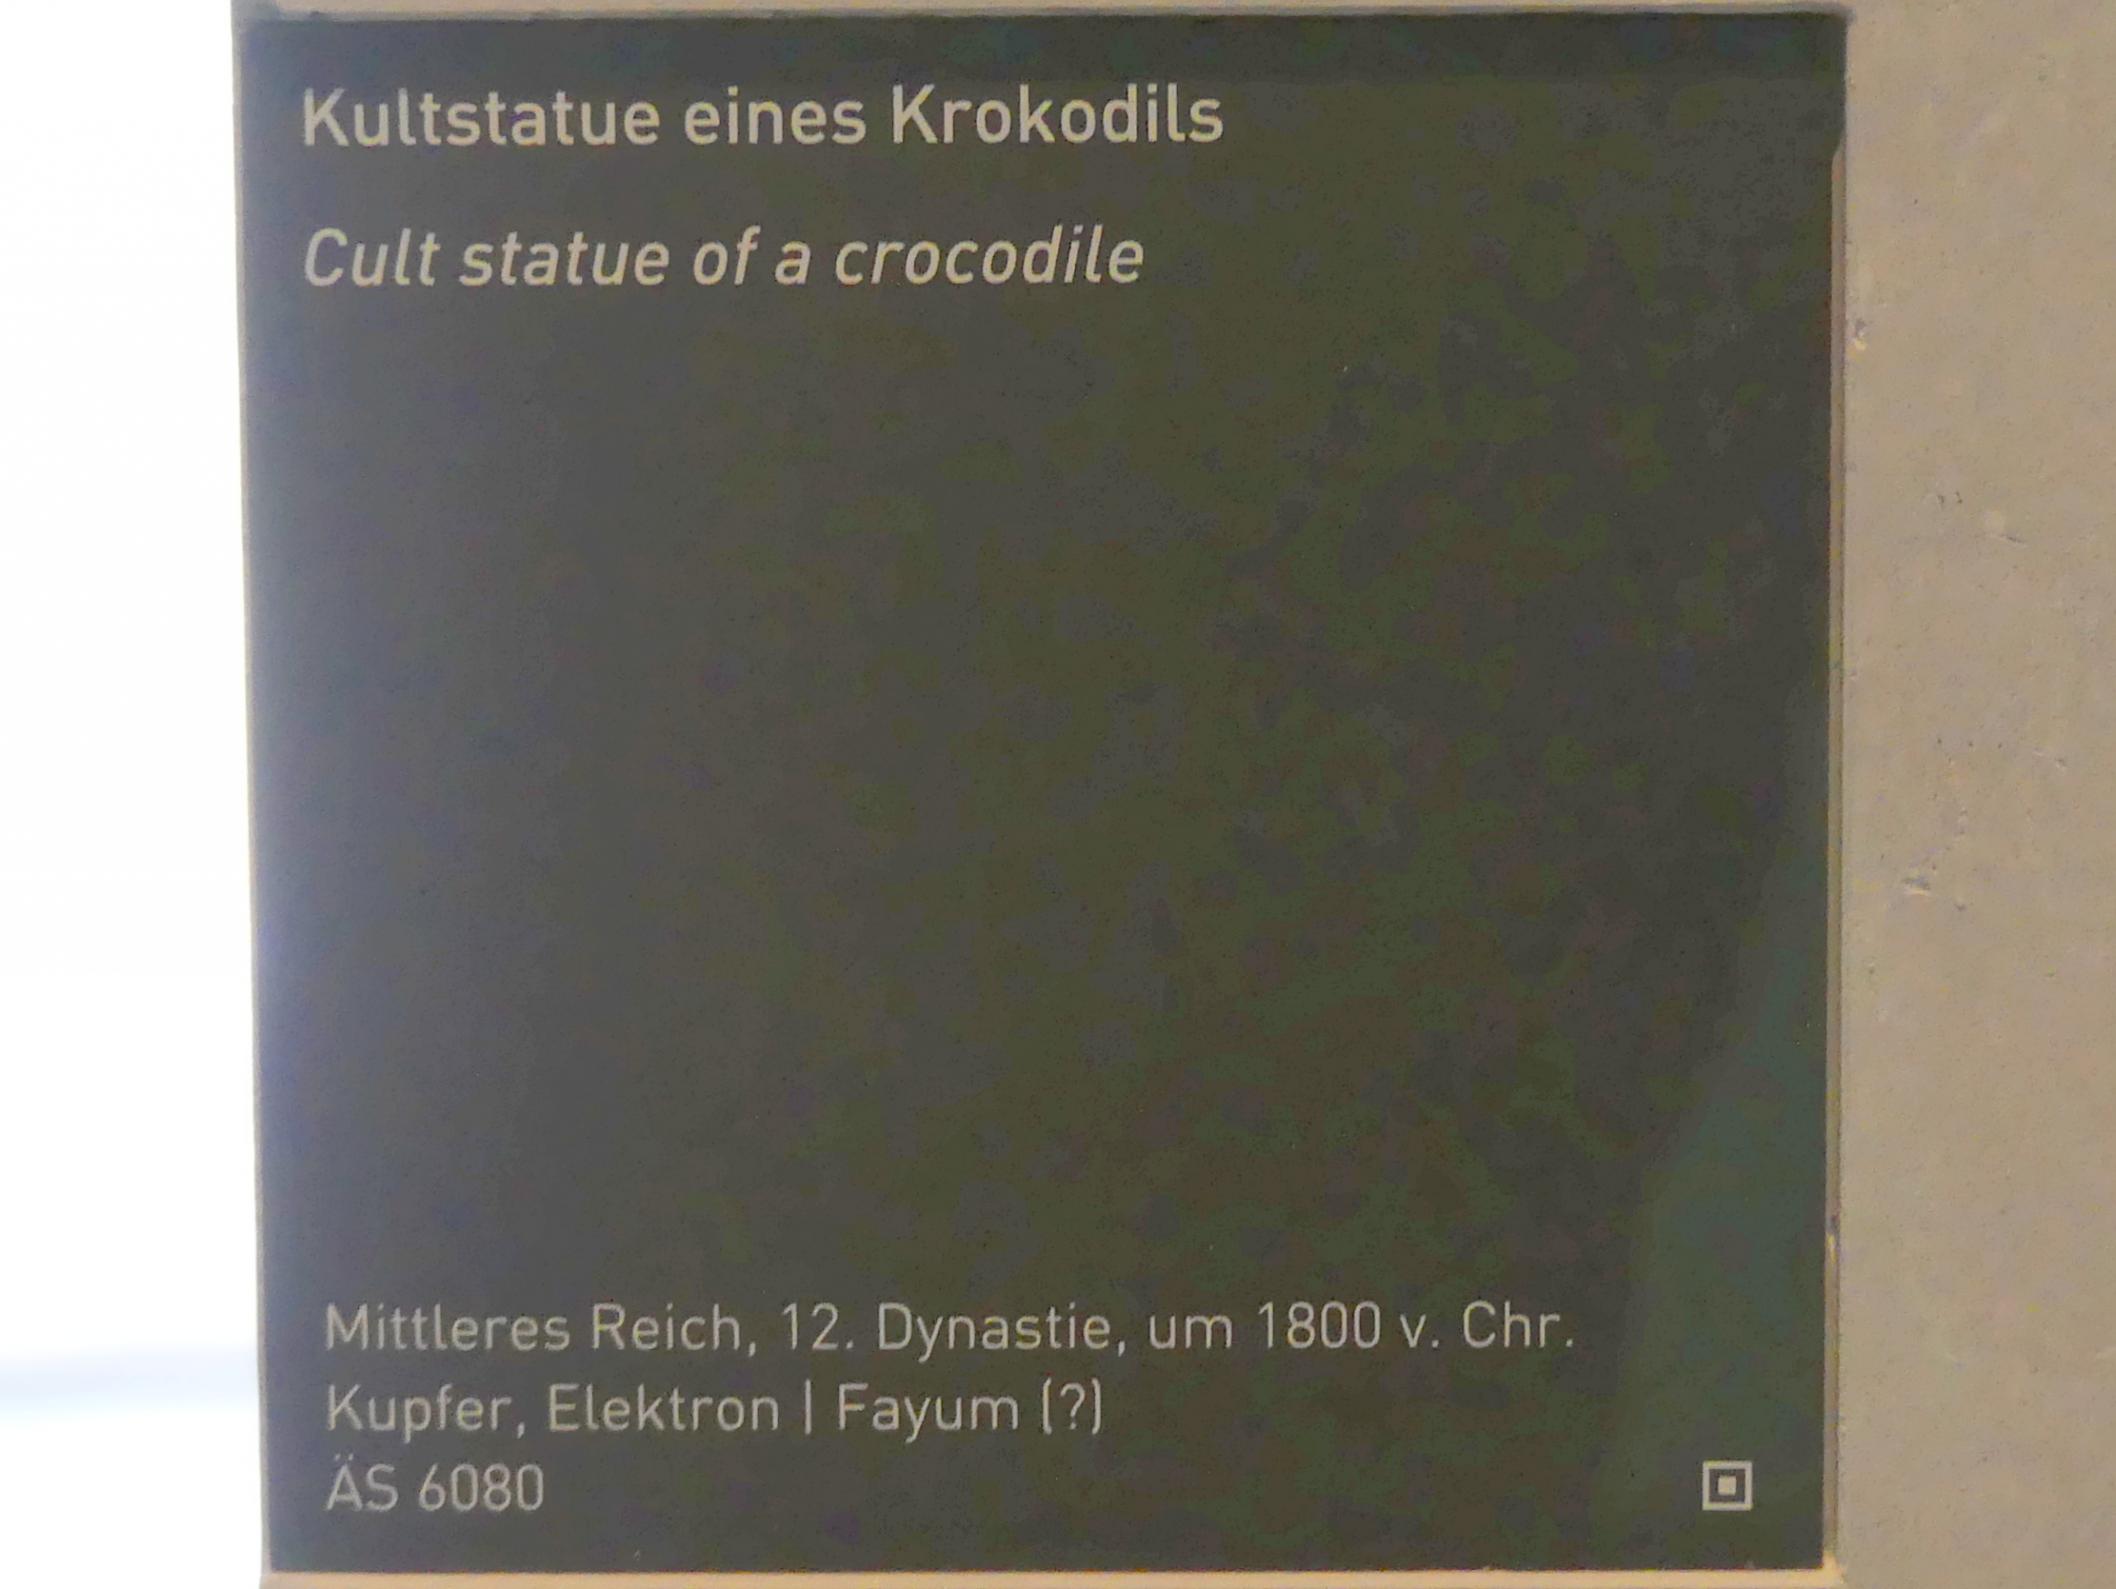 Kultstatue eines Krokodils, 12. Dynastie, 1803 - 1634 v. Chr., 1800 v. Chr., Bild 3/3